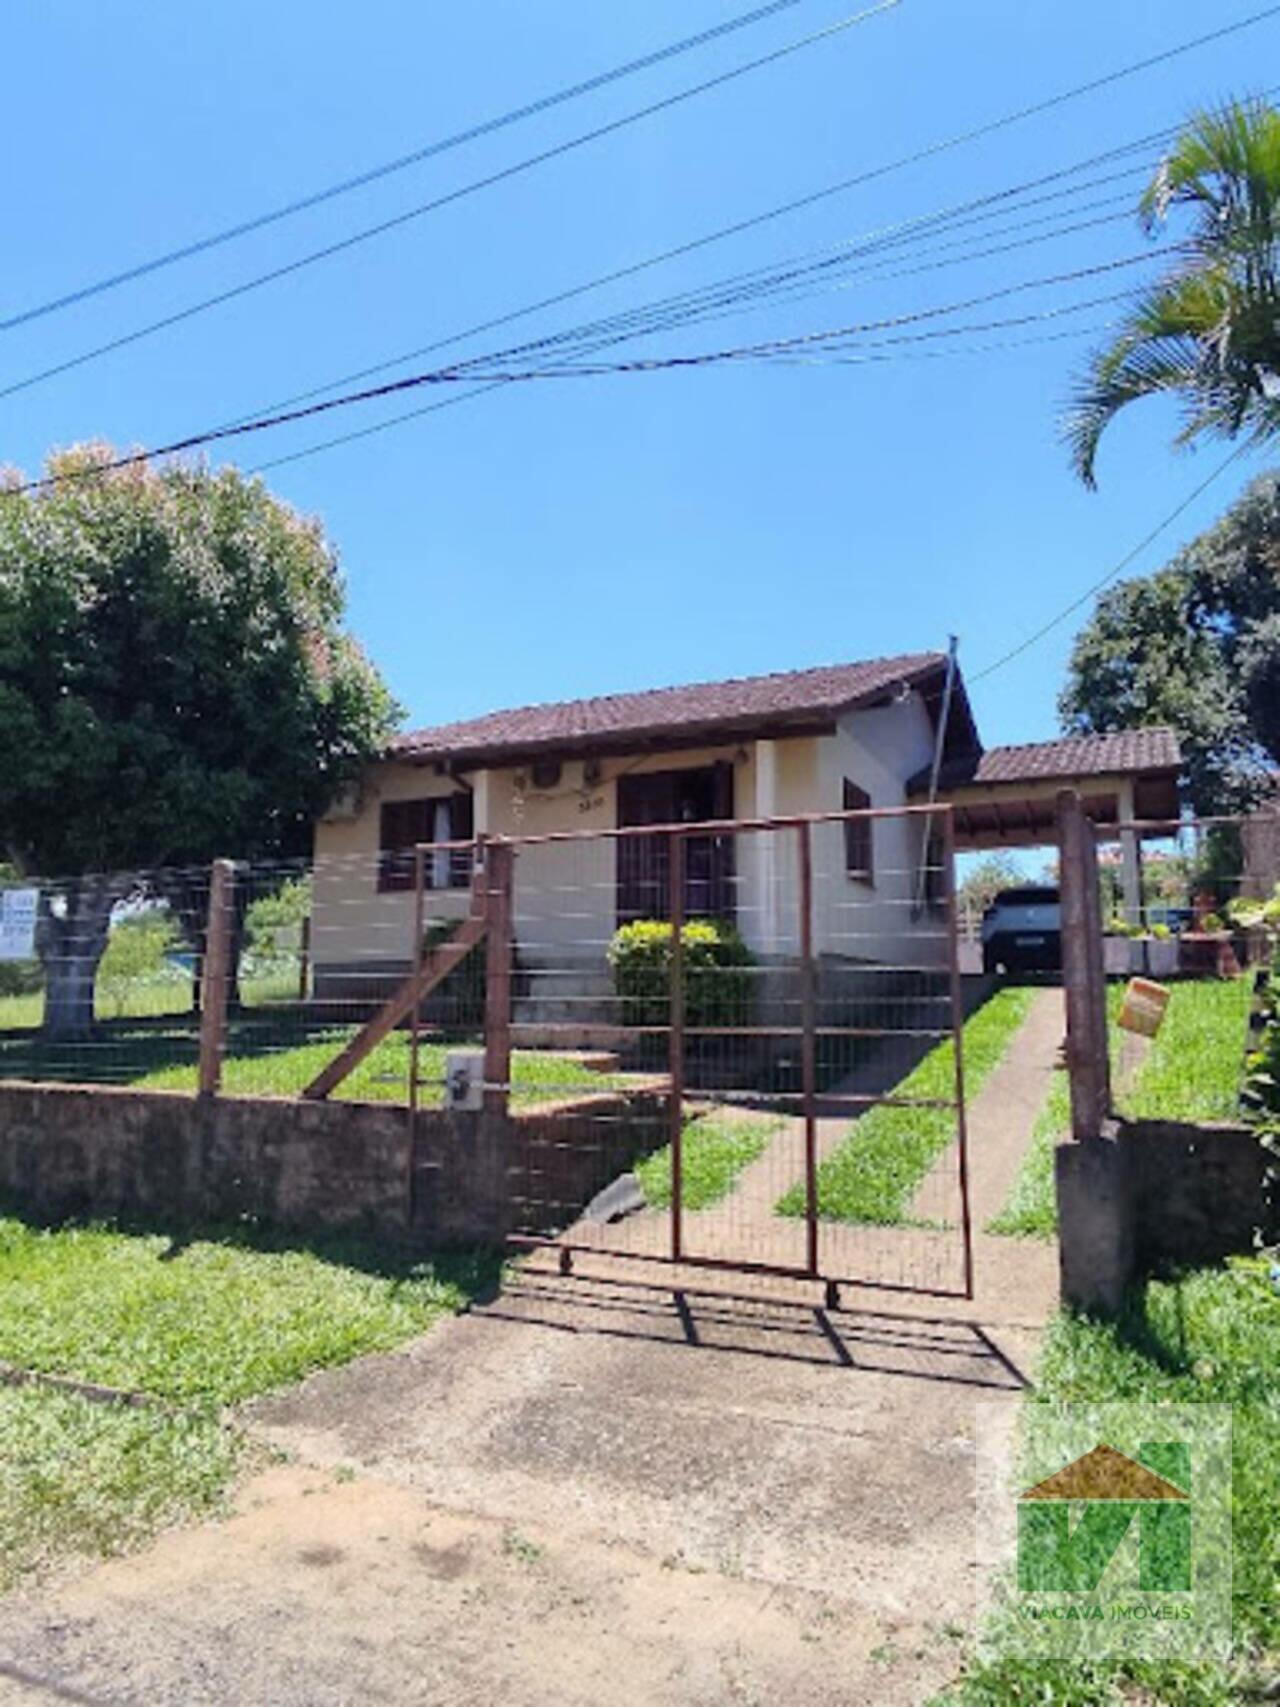 Casa Nossa Senhora de Fátima, Taquara - RS